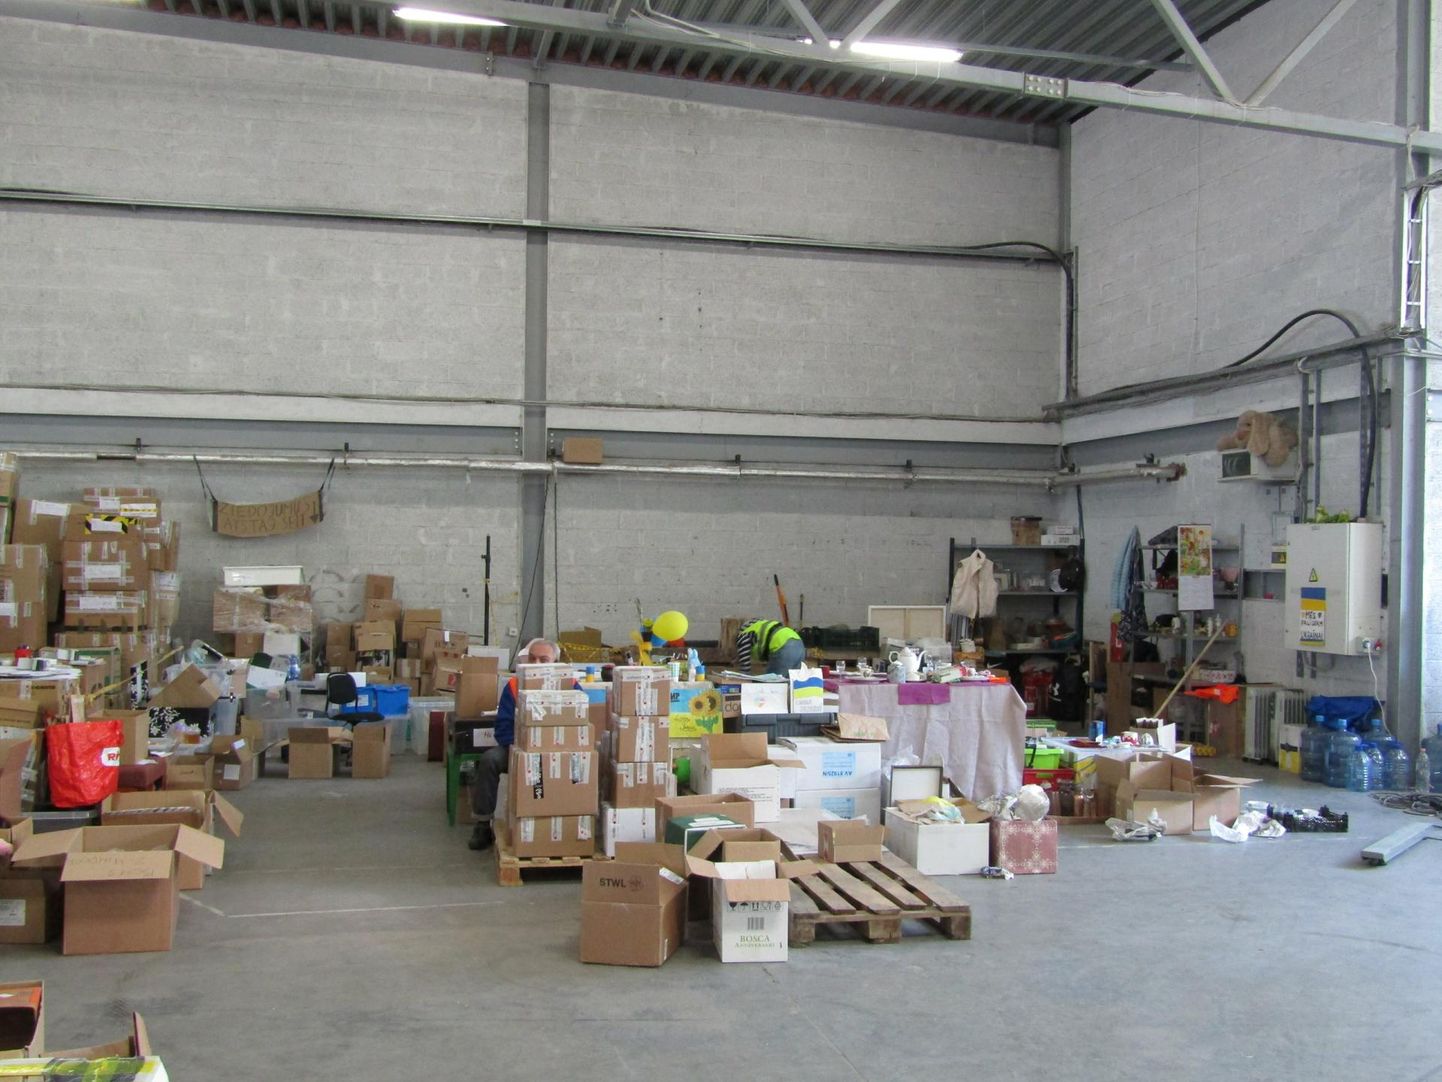 Ühenduse Tavi Draugi sorteerimisnurk, kus annetustena saadud esemed jagatakse erinevate kategooriate alusel. 